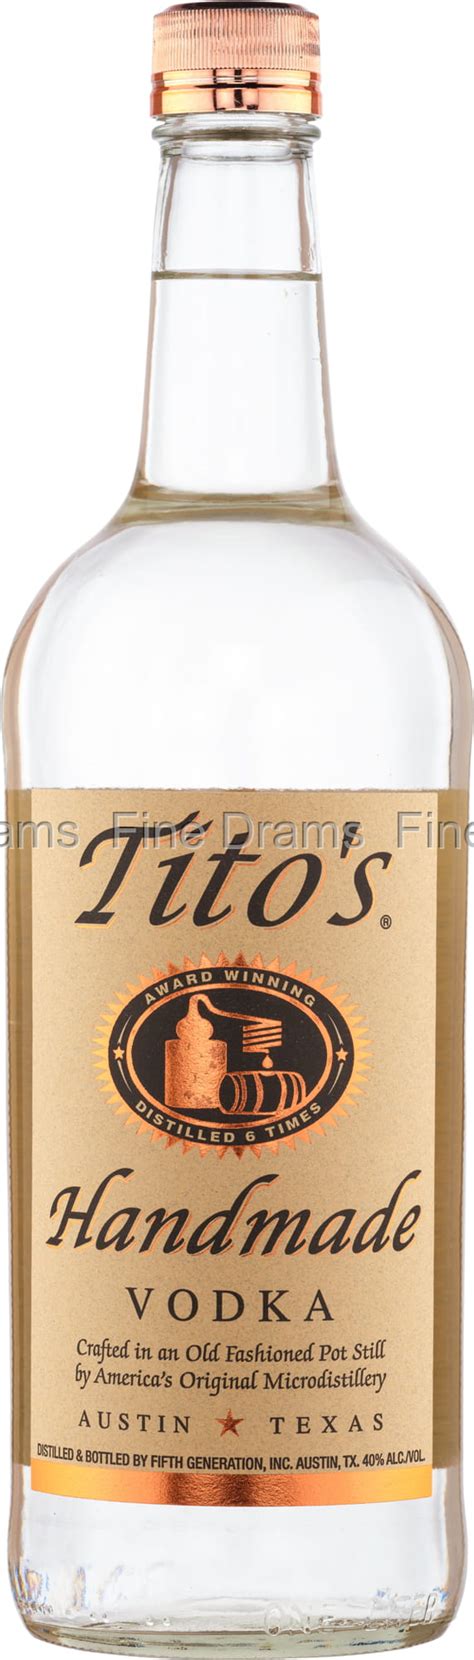 tito s handmade vodka 1 liter